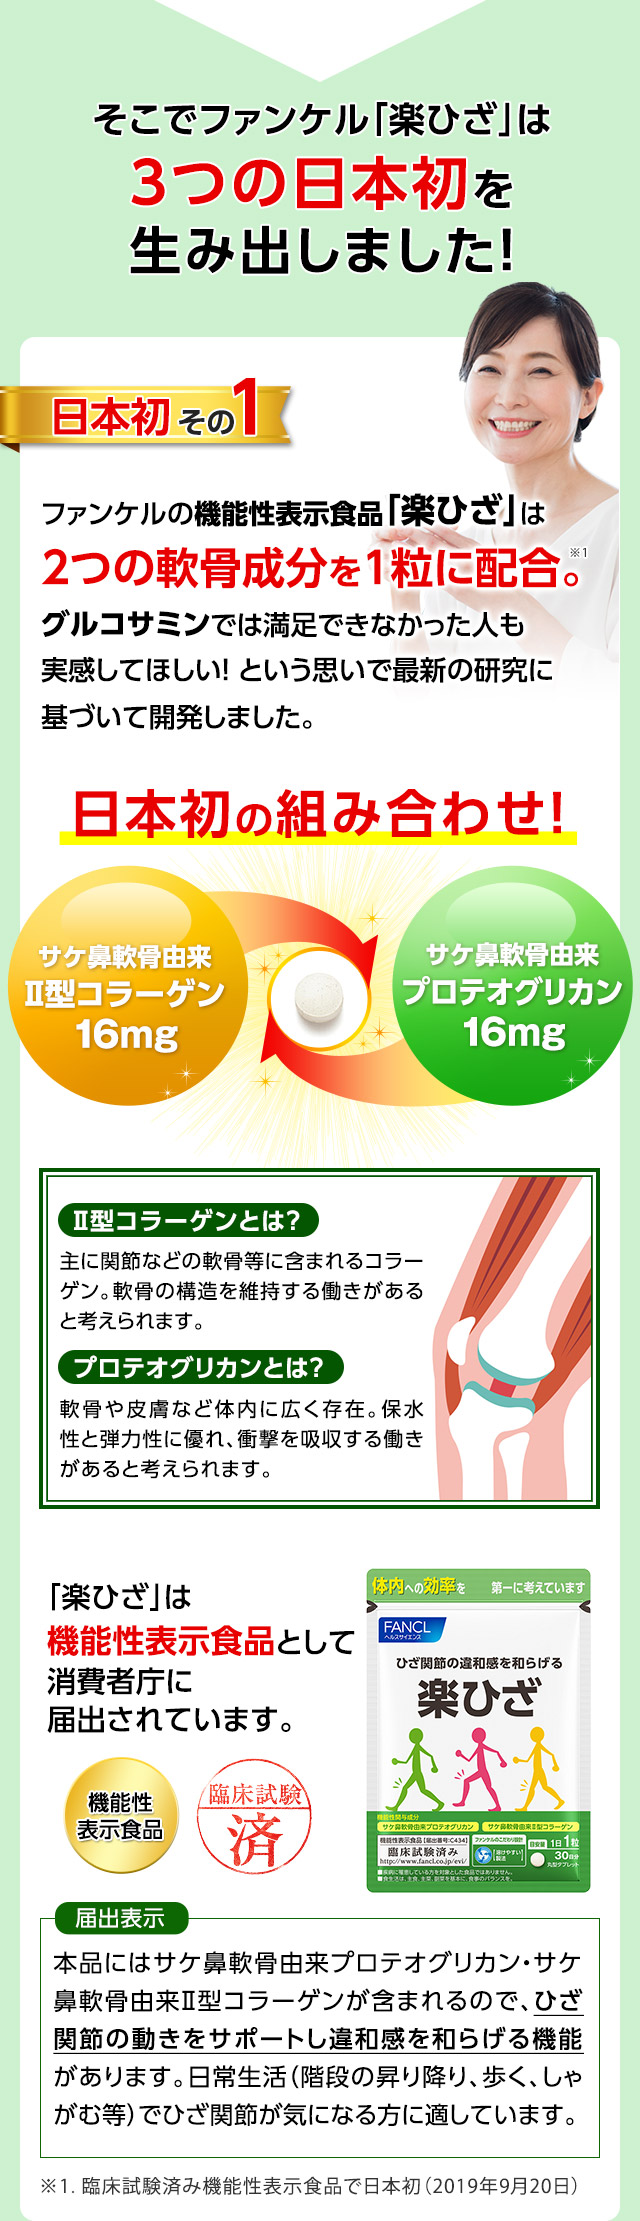 そこでファンケル「楽ひざ」は3つの日本初を生み出しました！　日本初その1　ファンケルの機能性表示食品「楽ひざ」は2つの軟骨成分を1粒に配合。グルコサミンでは満足できなかった人も実感してほしい！という思いで最新の研究に基づいて開発しました。　日本初の組み合わせ!　サケ鼻軟骨由来Ⅱ型コラーゲン16mg　サケ鼻軟骨由来プロテオグリカン16mg　Ⅱ型コラーゲンとは？　主に関節などの軟骨等に含まれるコラーゲン。軟骨の構造を維持する働きがあると考えられます。　プロテオグリカンとは？　軟骨や皮膚など体内に広く存在。保水性と弾力性に優れ、衝撃を吸収する働きがあると考えられます。　「楽ひざ」は機能性表示食品として消費者庁に届出されています。　届出表示　本品にはサケ鼻軟骨由来プロテオグリカン・サケ鼻軟骨由来Ⅱ型コラーゲンが含まれるので、ひざ関節の動きをサポートし違和感を和らげる機能があります。日常生活（階段の昇り降り、歩く、しゃがむ等）でひざ関節が気になる方に適しています。